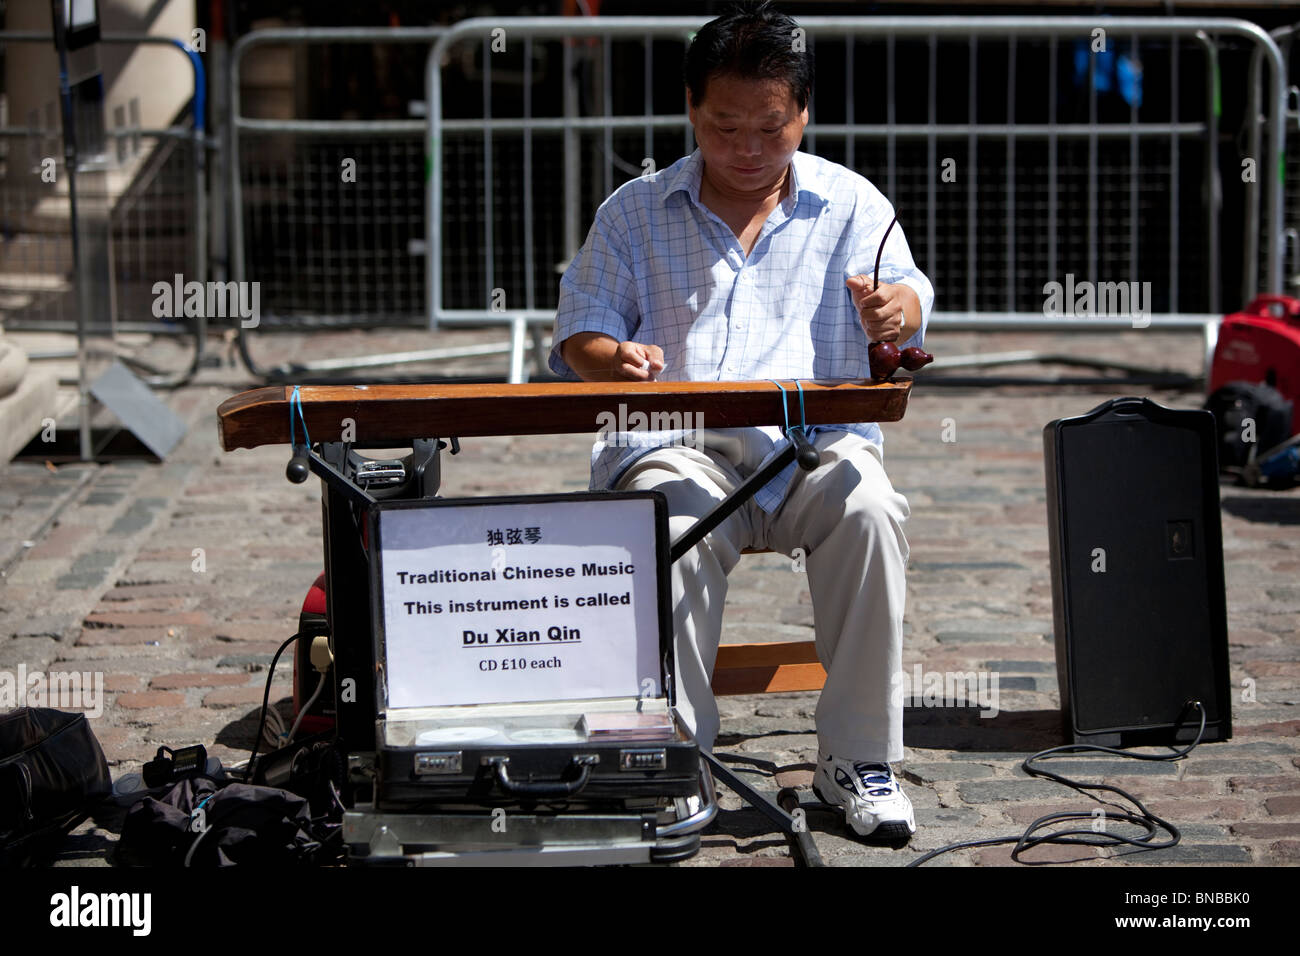 Street bucker jouant un instrument de musique chinois appelé duxianqin ou du xian qin, Covent Garden, Londres, Angleterre, Royaume-Uni. Banque D'Images